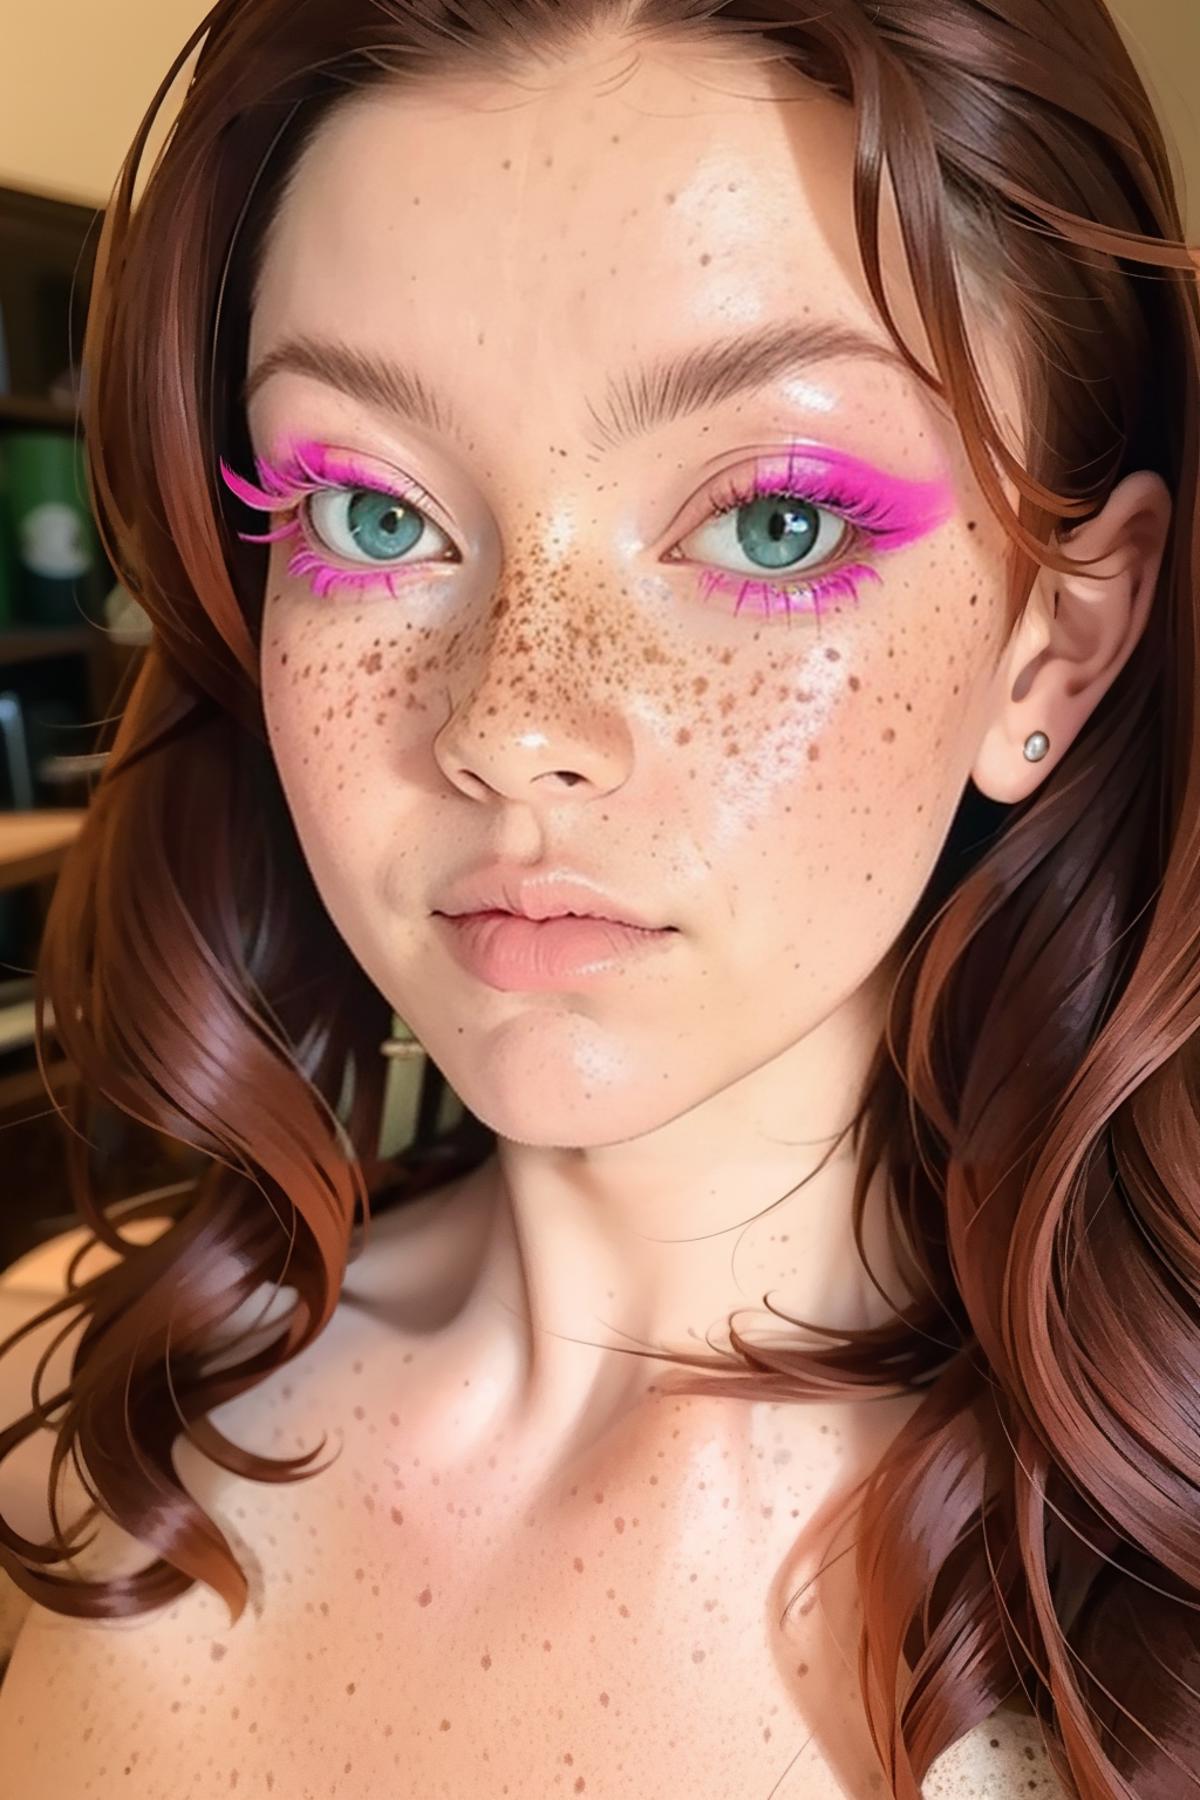 Colourful Eyelashes image by freckledvixon